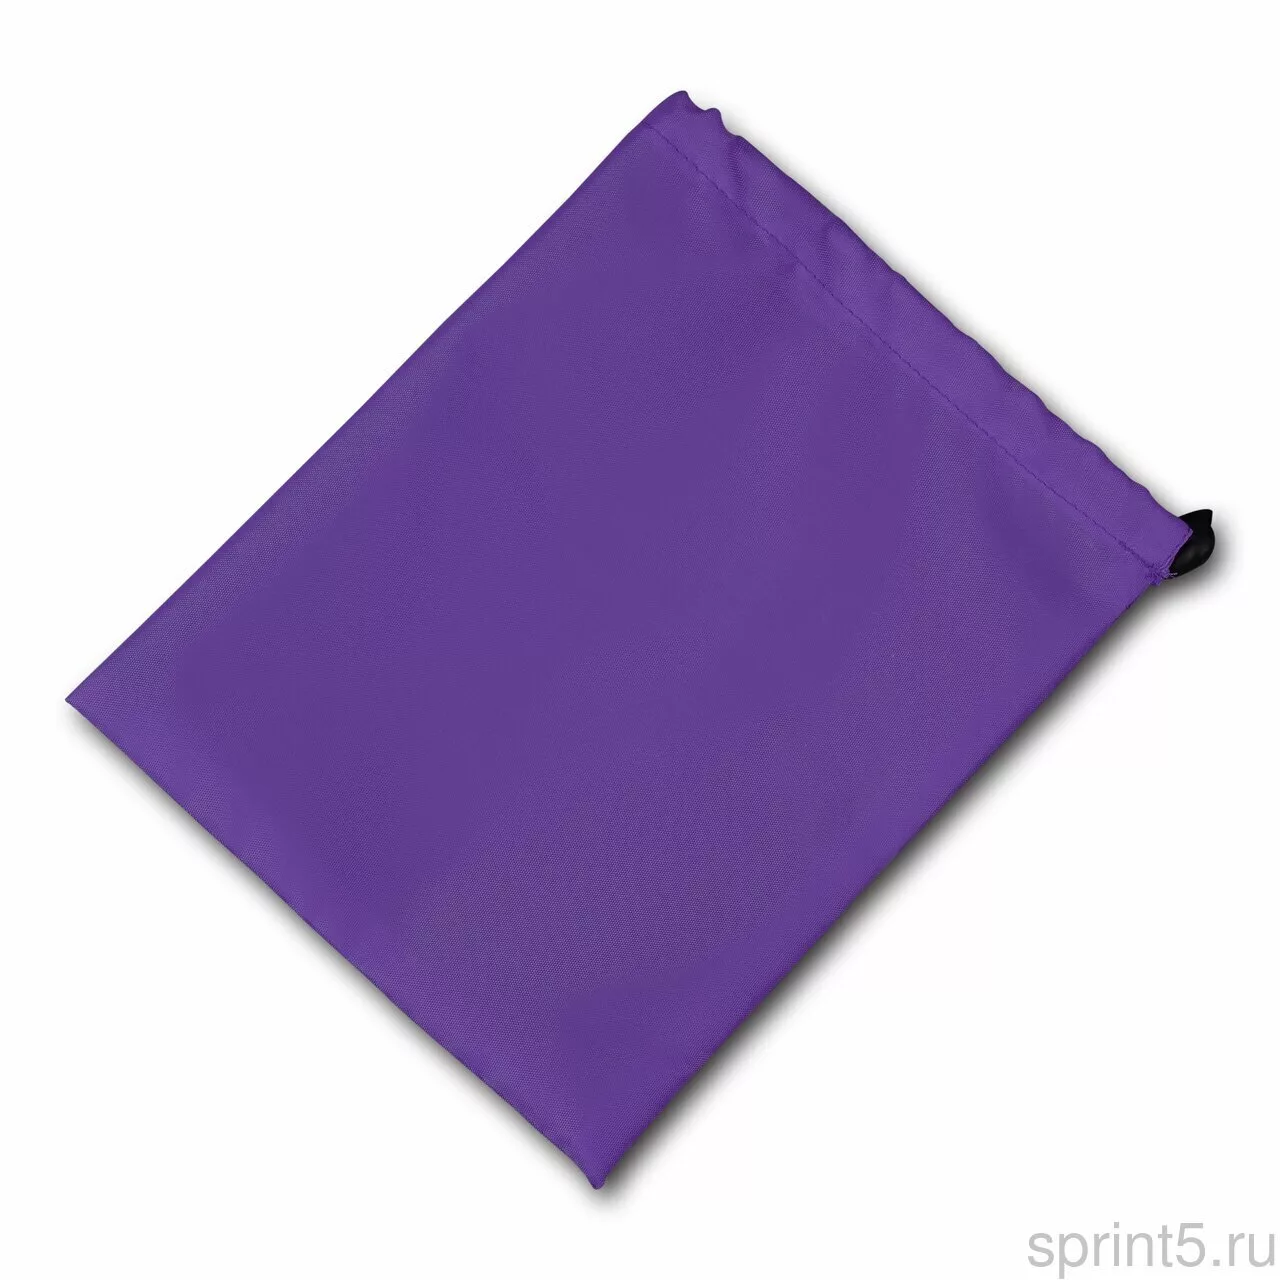 Реальное фото Чехол для скакалки Indigo 22*18 см фиолетовый SM-338 от магазина СпортСЕ